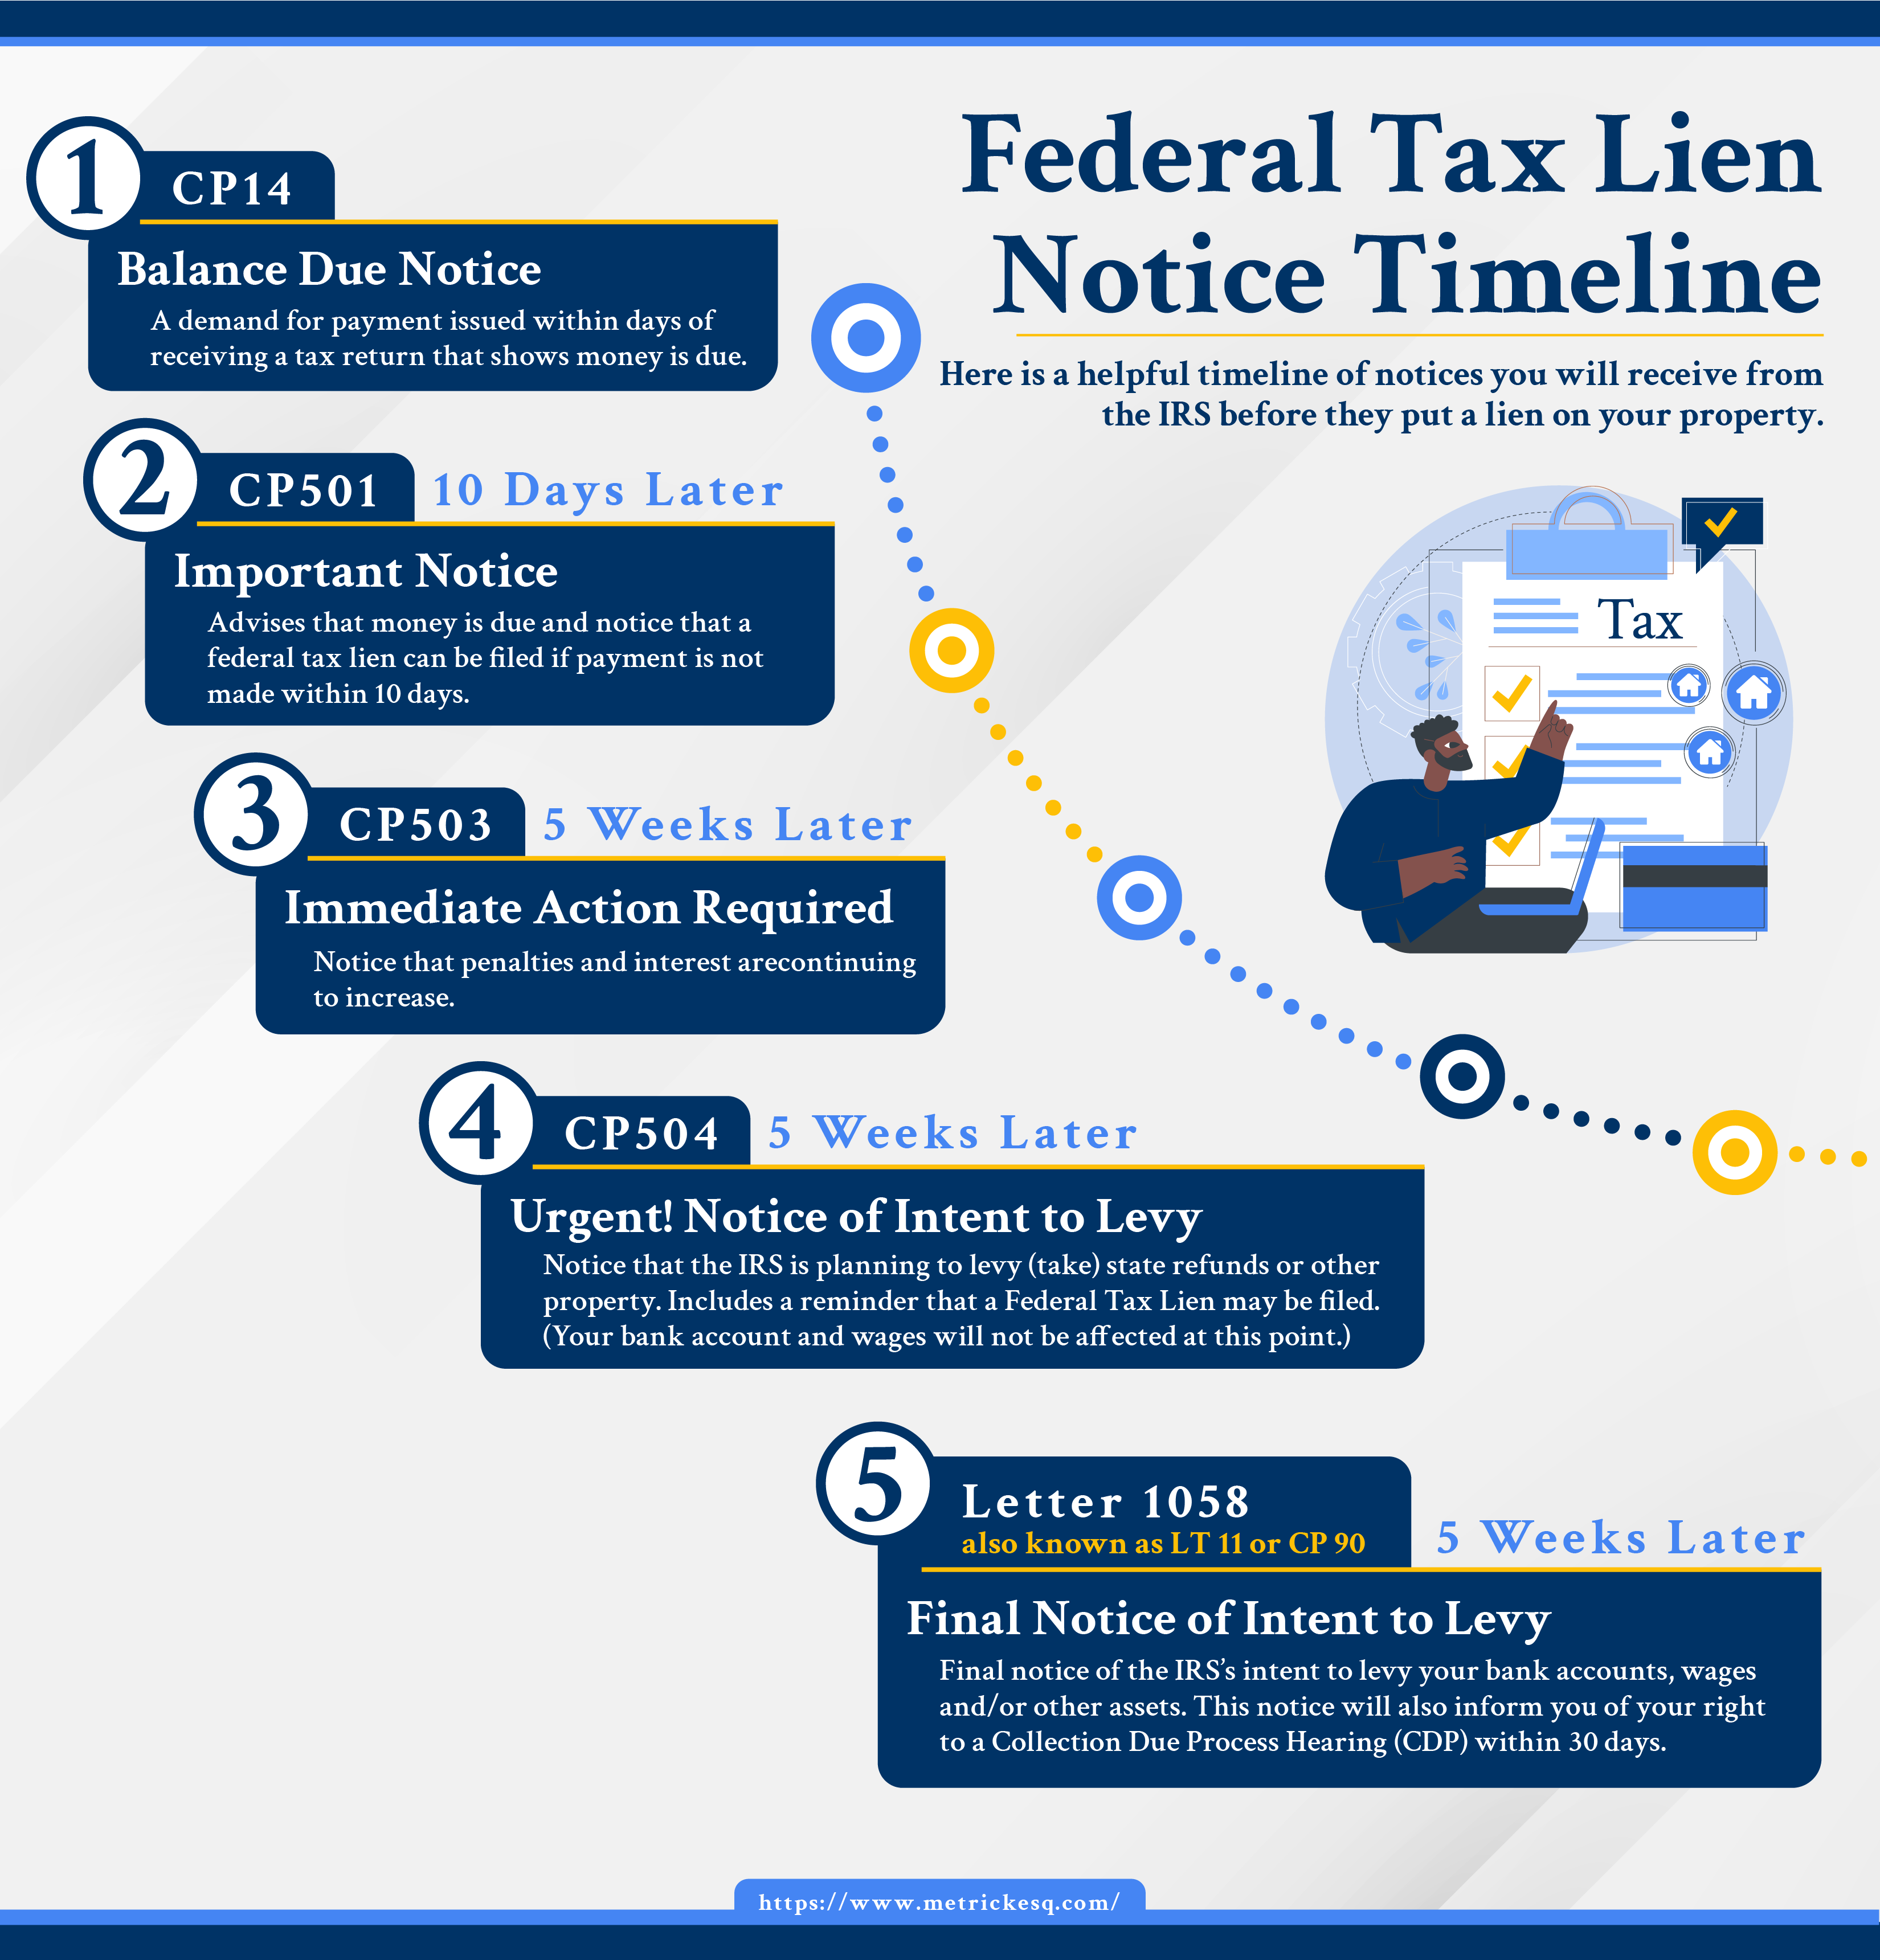 NJ Federal Tax Lien Notice Timeline | Ira J. Metrick, Attorney at Law, LLC